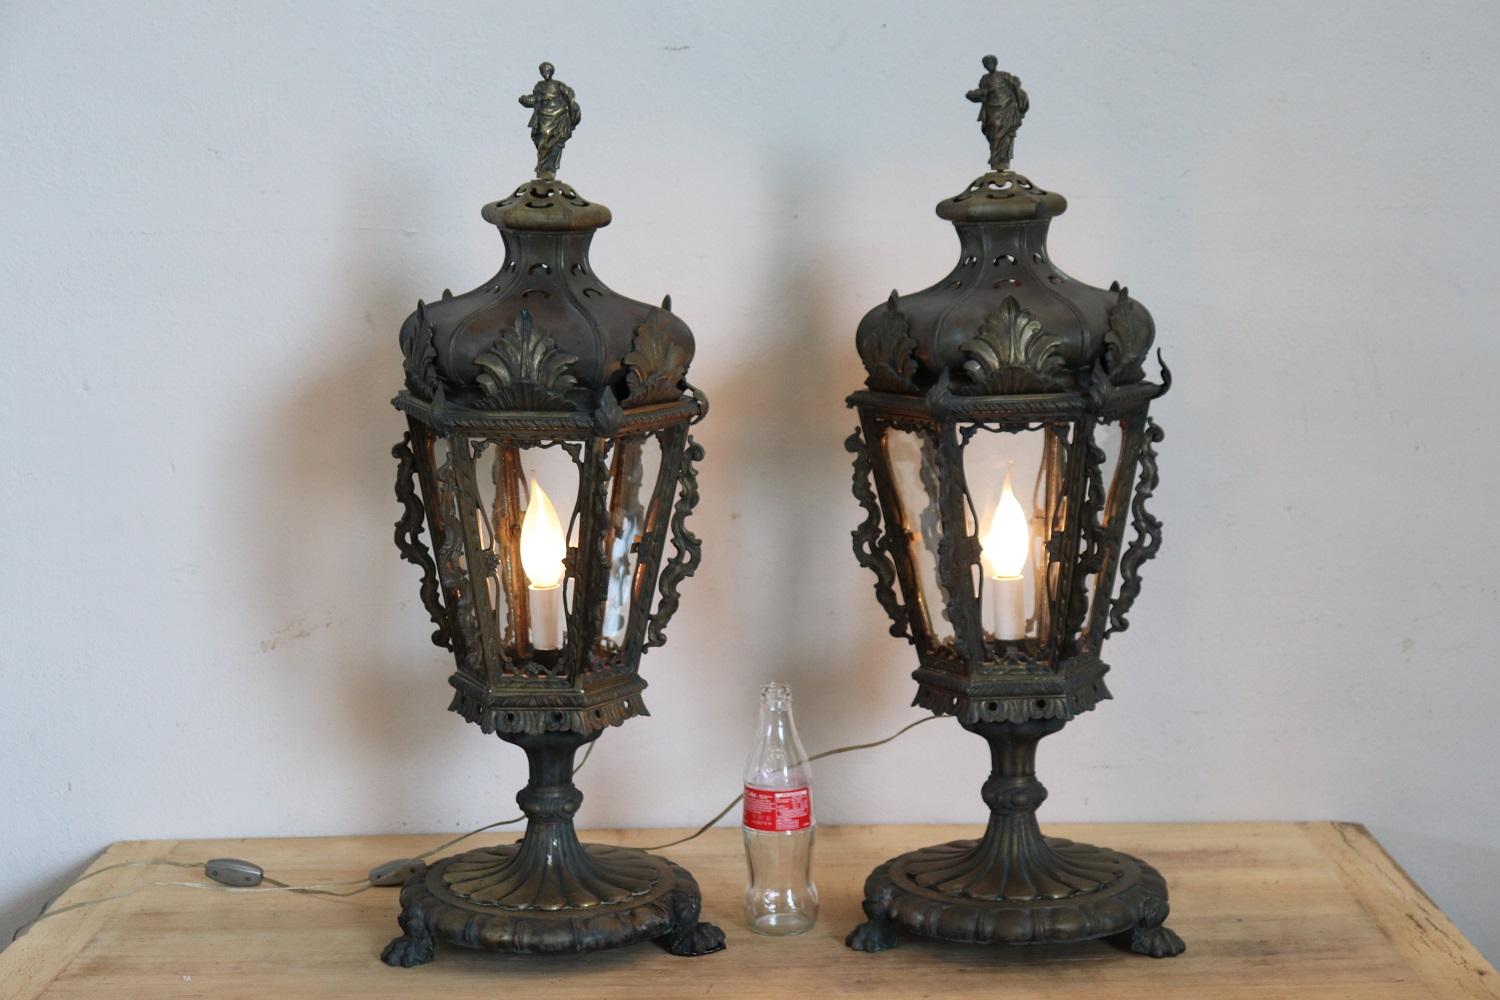 Belle paire de lampes de table ou lanternes italiennes du début du 20e siècle en bronze. Le bronze a acquis une belle patine d'ancienneté. Le bronze est orné d'un décor sculpté de manière complexe.